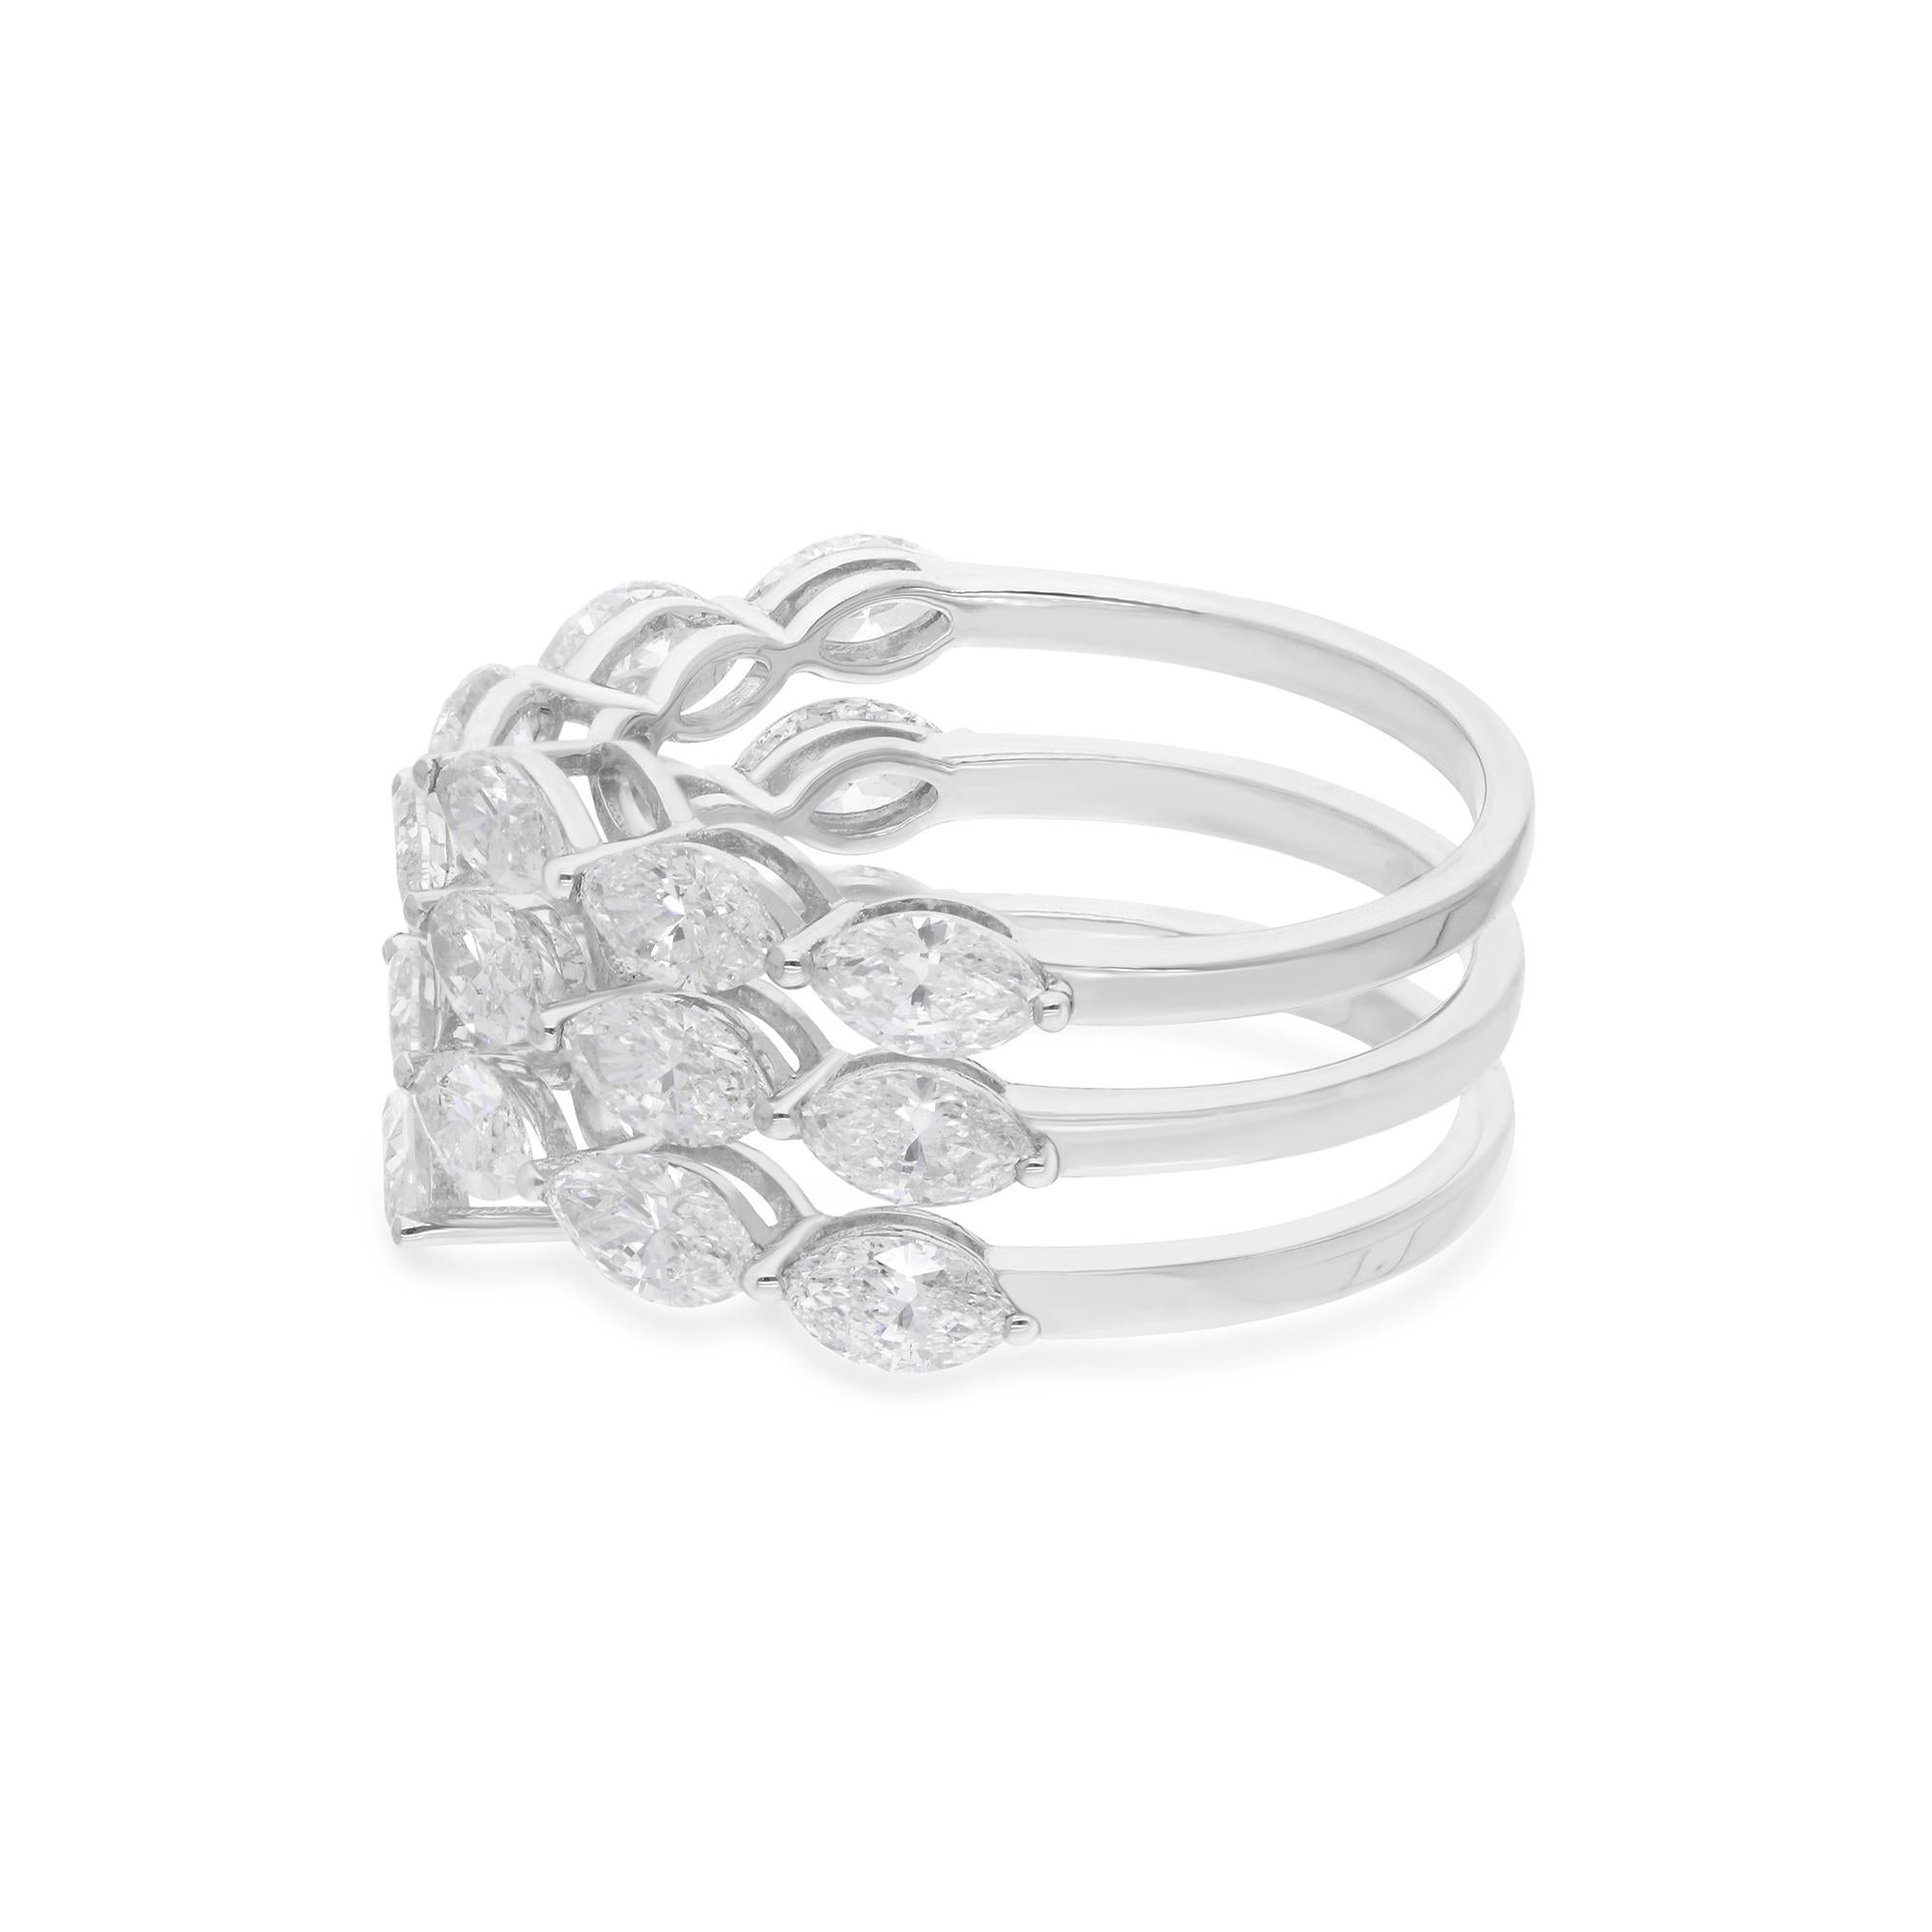 Fabriqué avec une attention méticuleuse aux détails, le diamant est serti dans un gracieux design en spirale qui s'enroule élégamment autour de votre doigt, créant un sentiment de mouvement et de fluidité. La monture en or blanc lustré 18 carats met